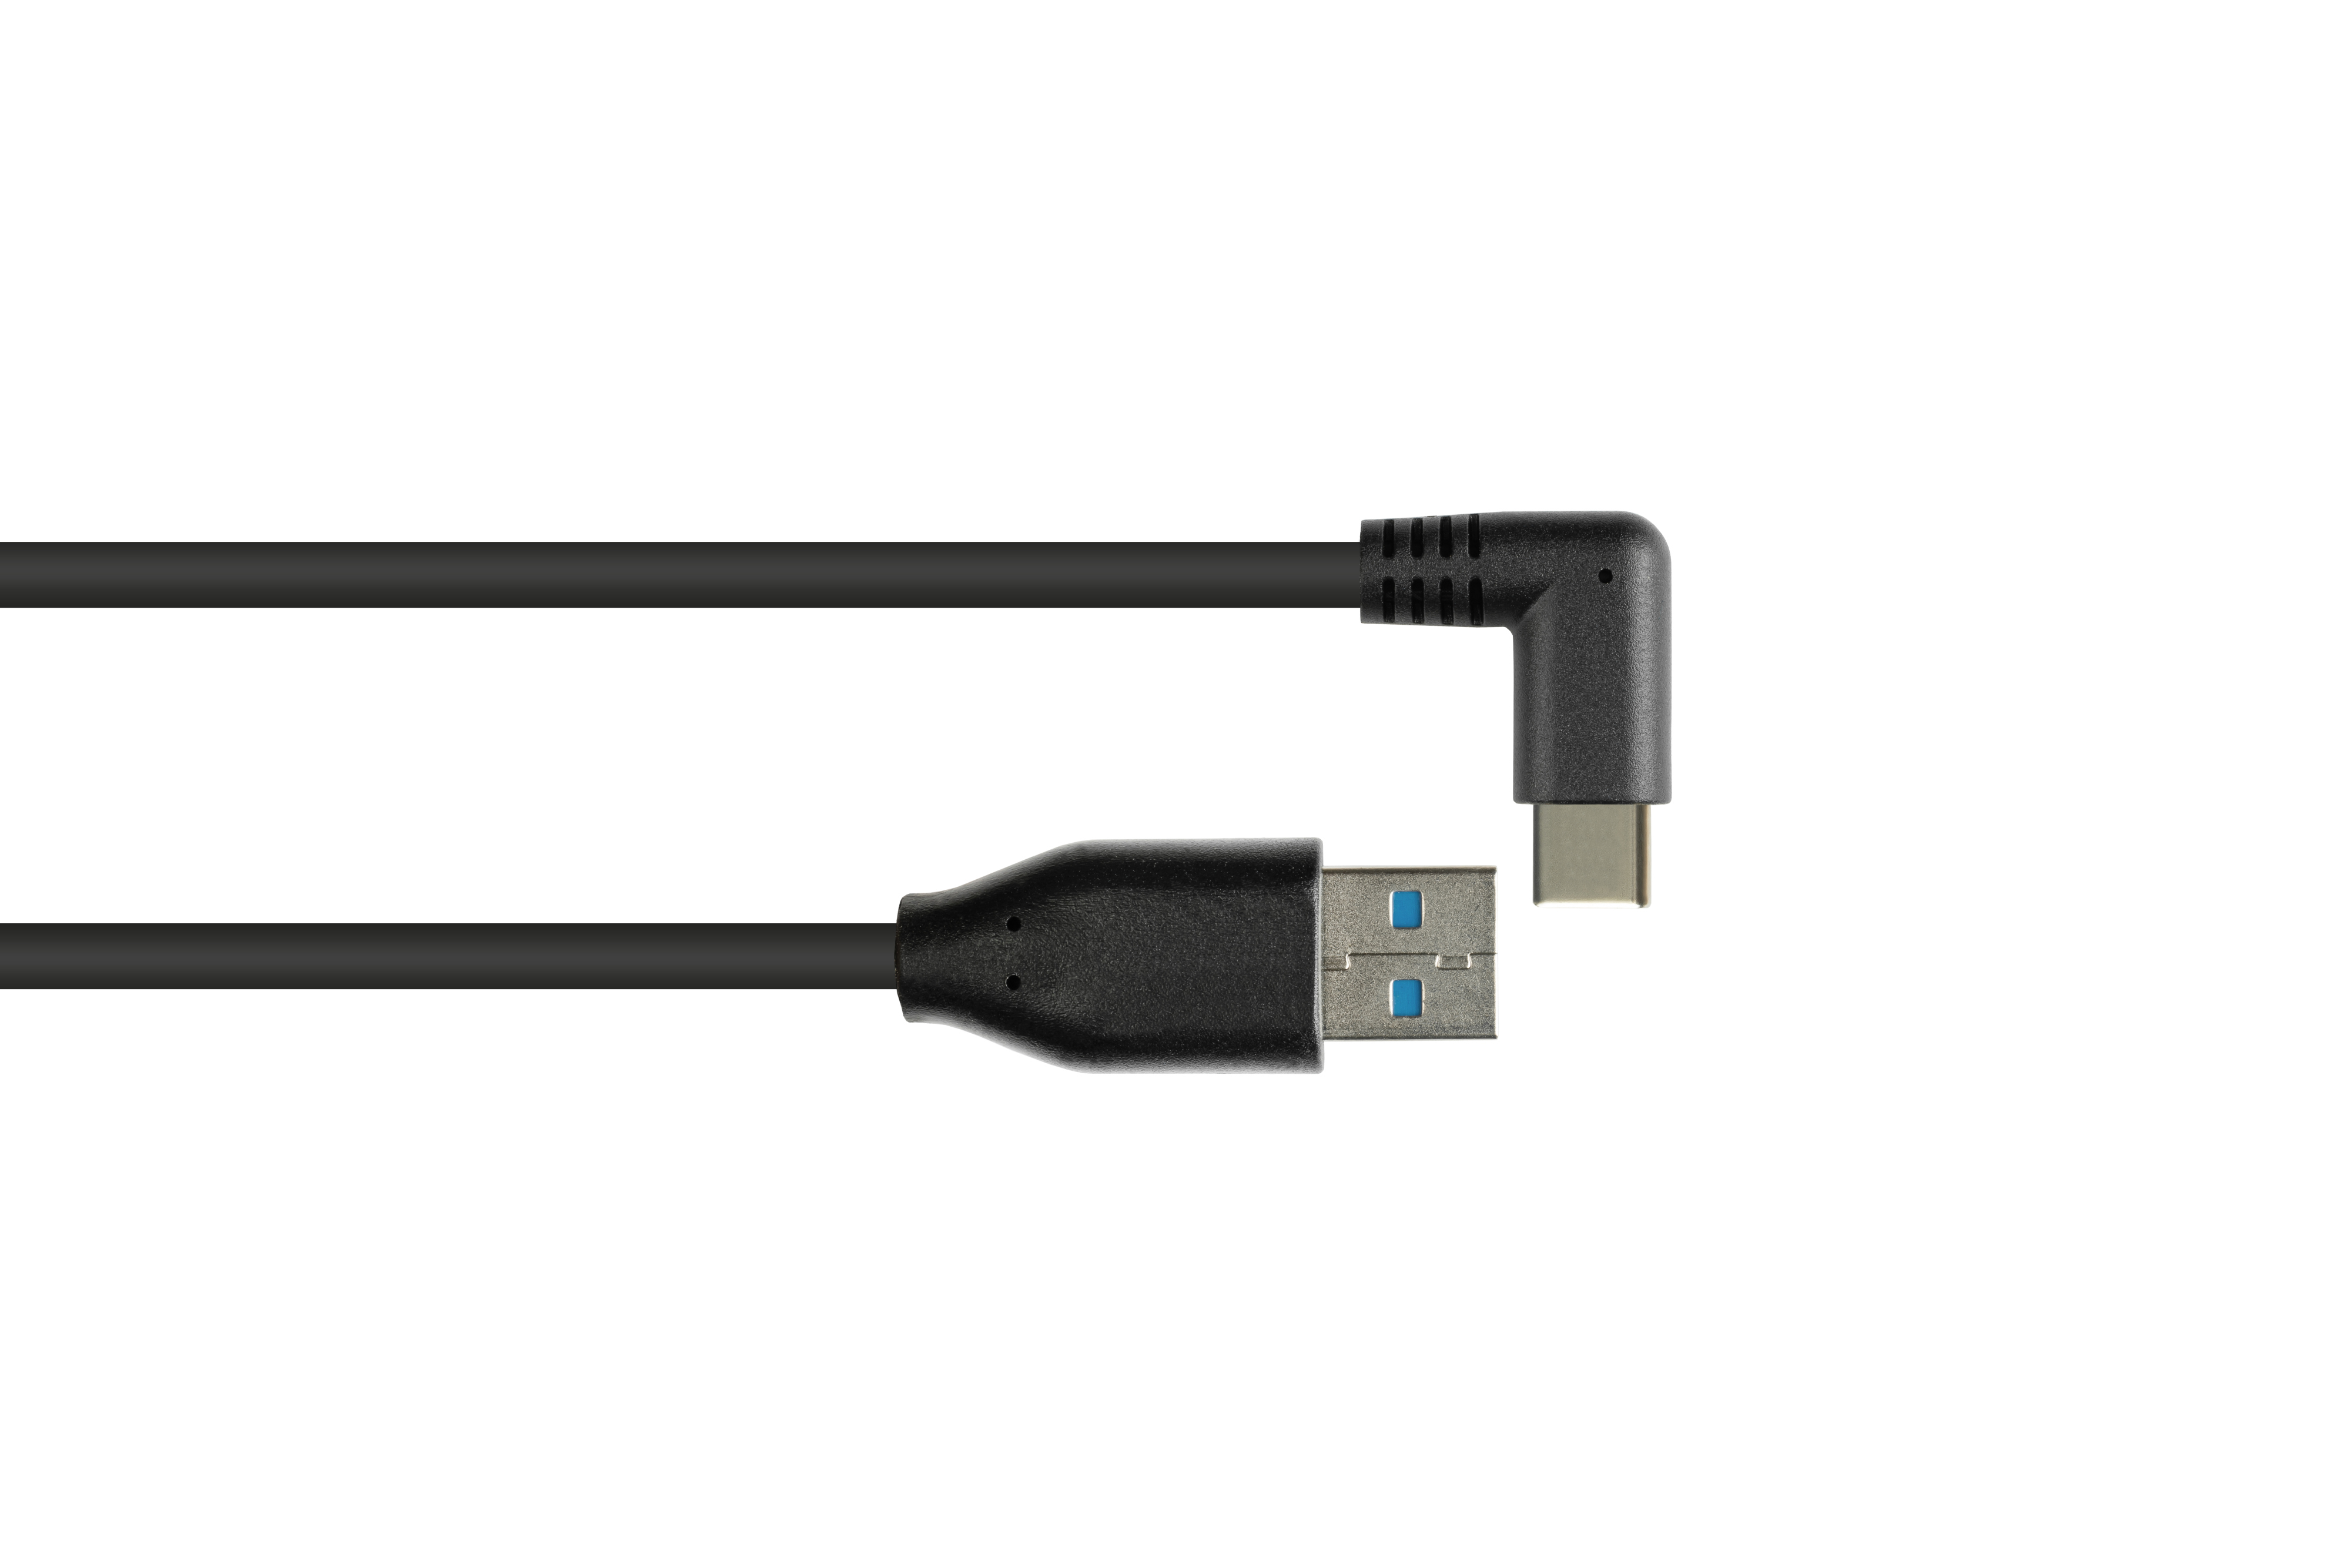 Stecker KABELMEISTER Anschlusskabel 90° A an 3.0 USB-C™ gewinkelt Stecker, schwarz USB CU,